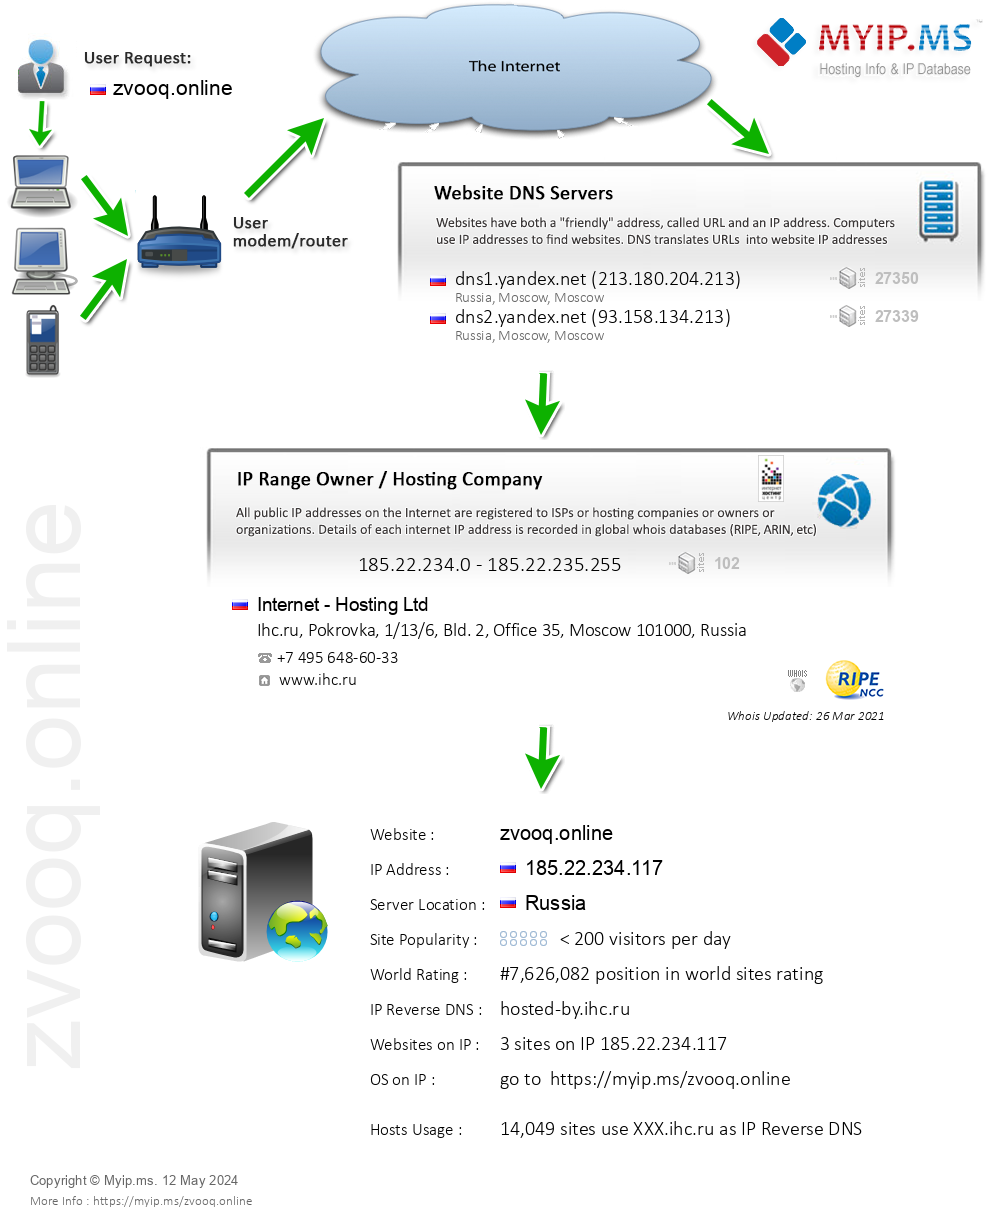 Zvooq.online - Website Hosting Visual IP Diagram